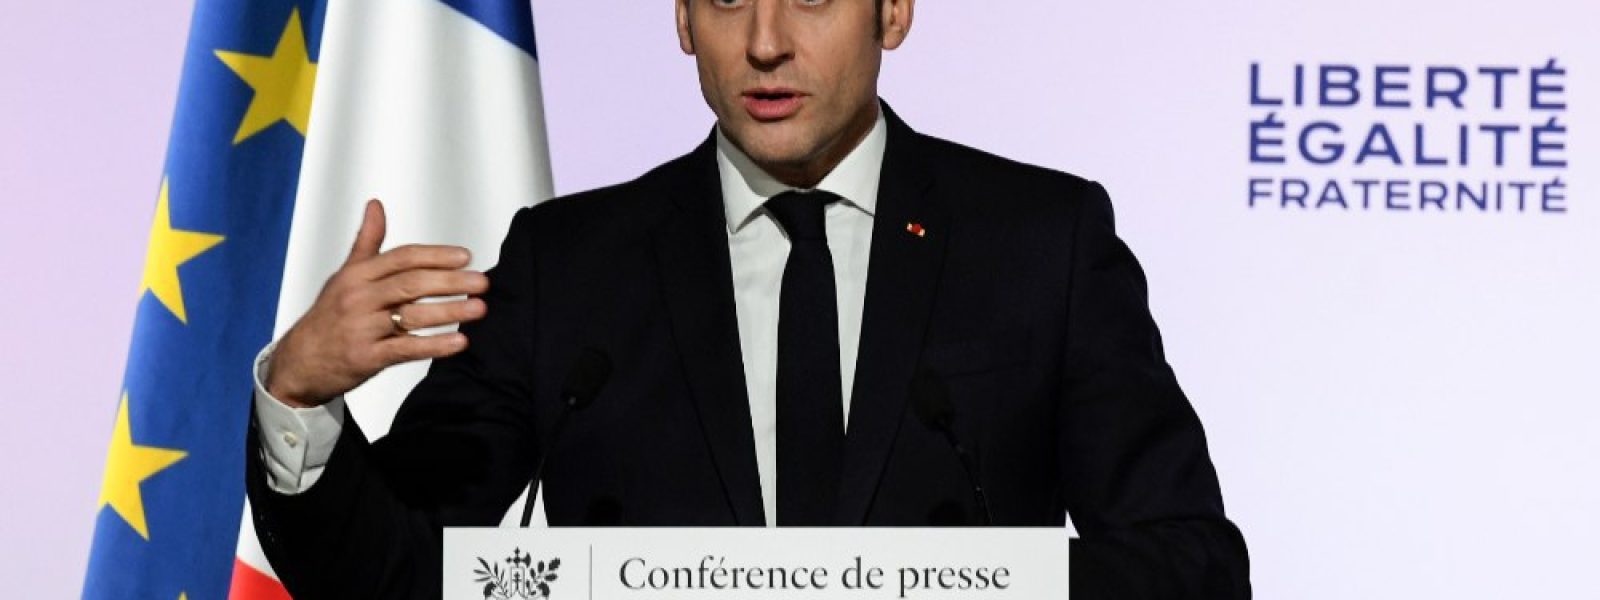 Discours du Président de la République le mardi 18 février. Sébastien Bozon / AFP.